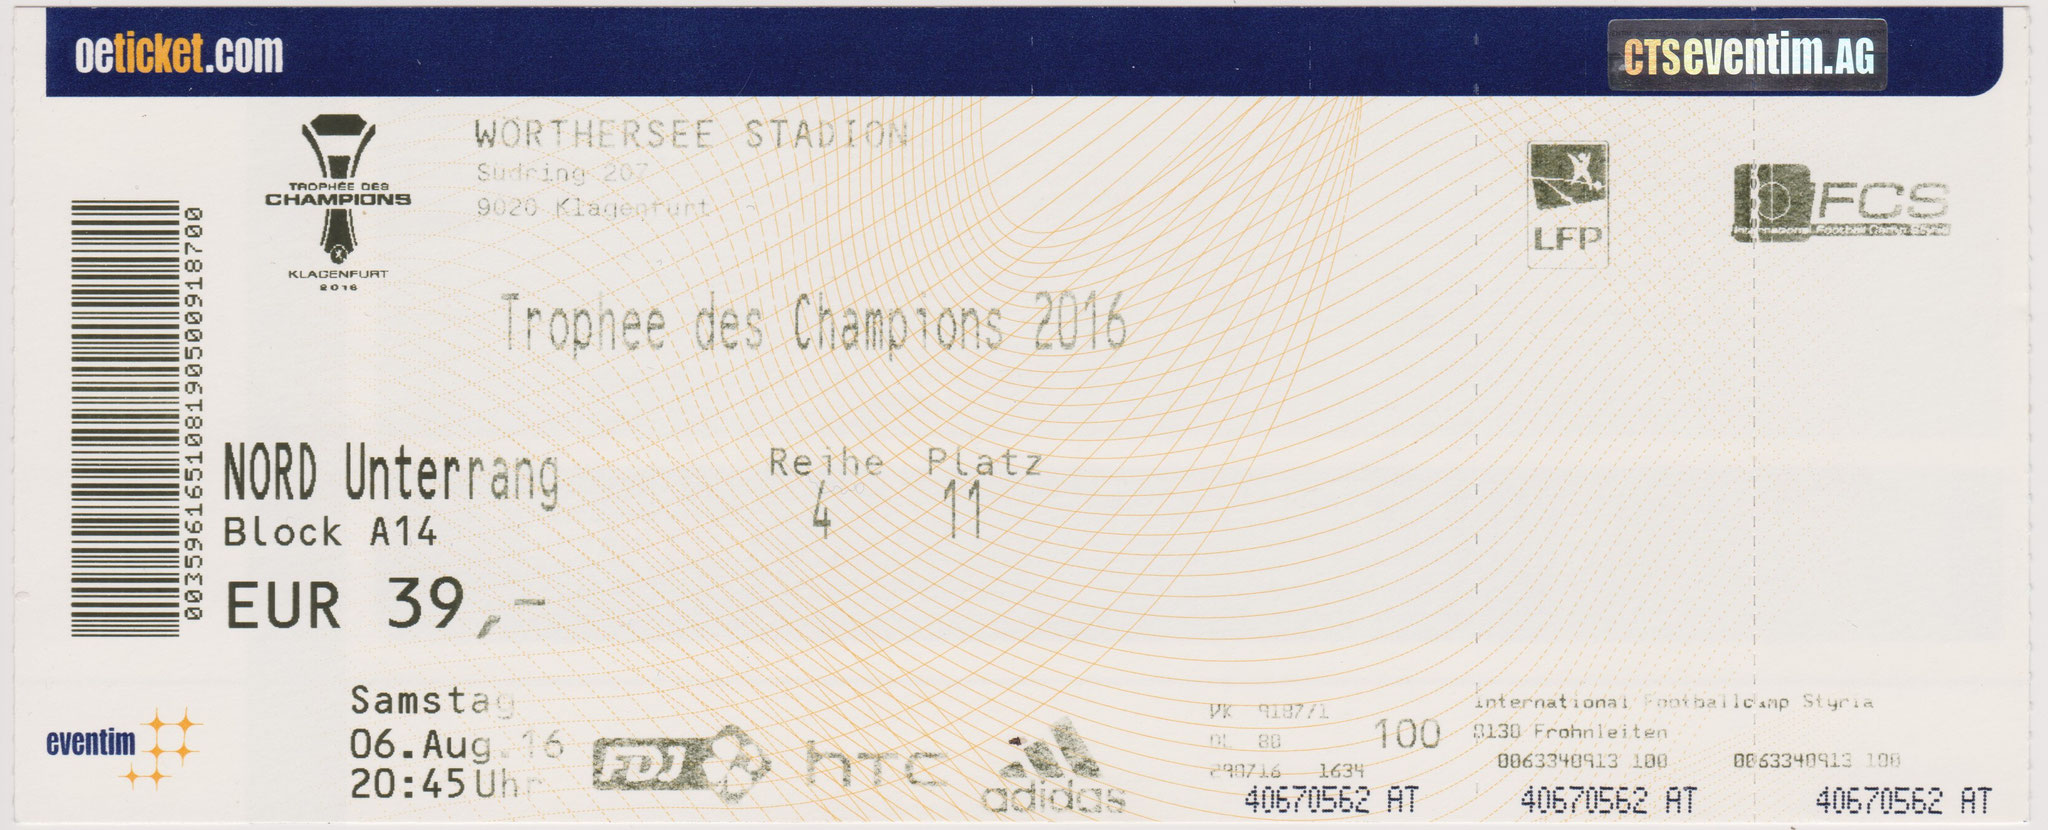 2016 à Klagenfurt : Paris SG bat Olympique Lyonnais  4 - 1